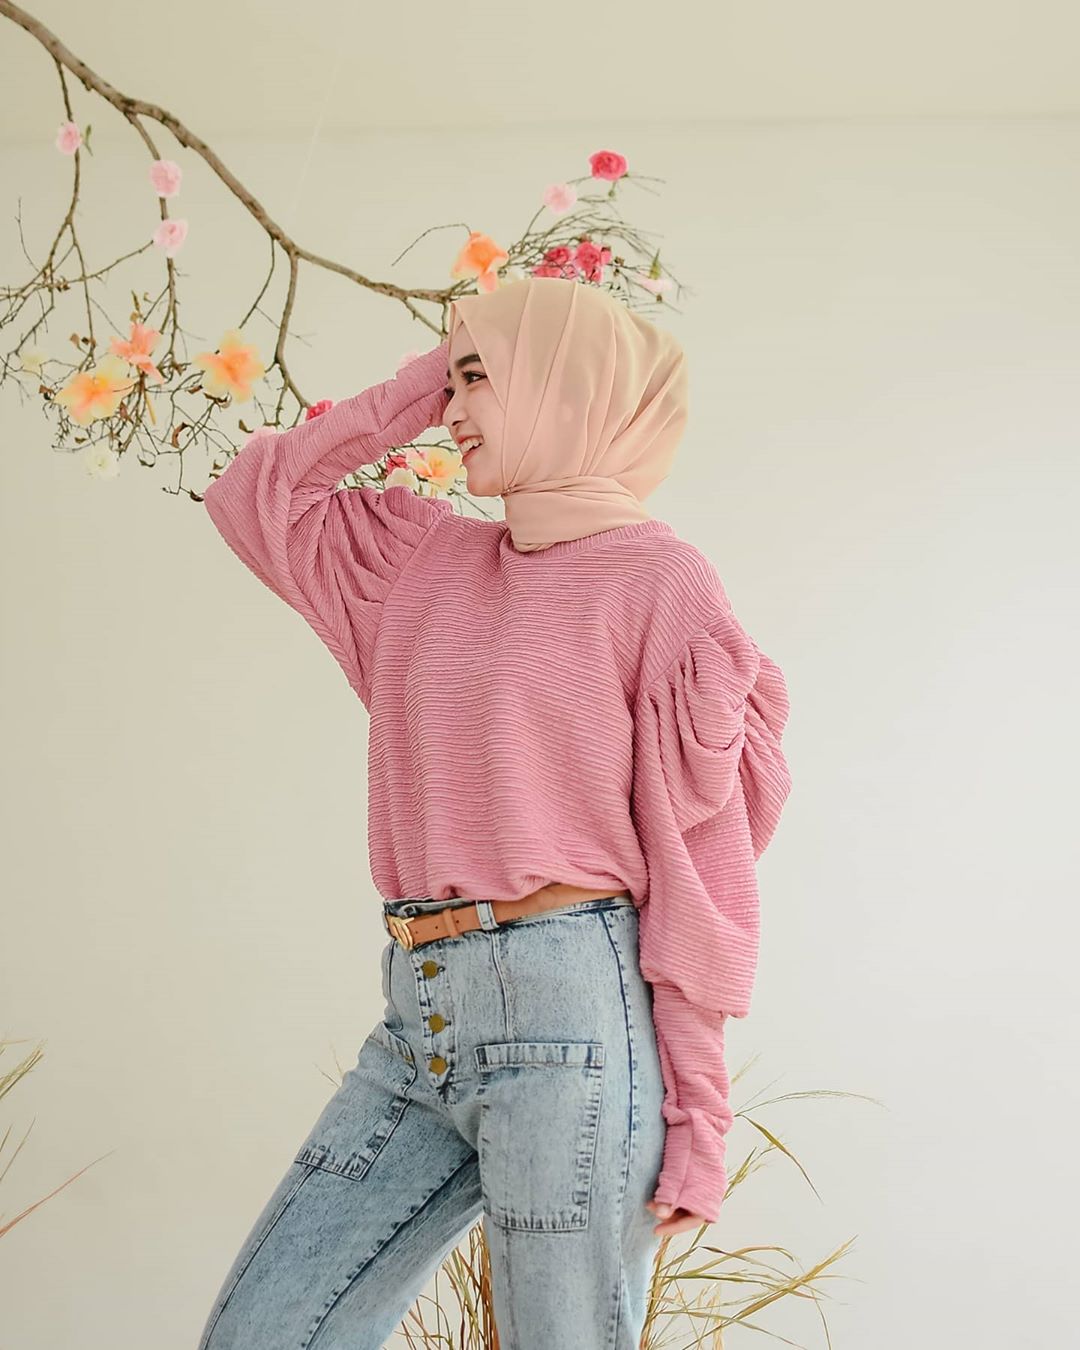 Baju Muslim Modern FABIA BLOUSE MF Bahan BABAT IMPORT Atasan Wanita Blouse Wanita Terbaru 2020 Remaja Blus Blouse Wanita Kekinian Jumbo